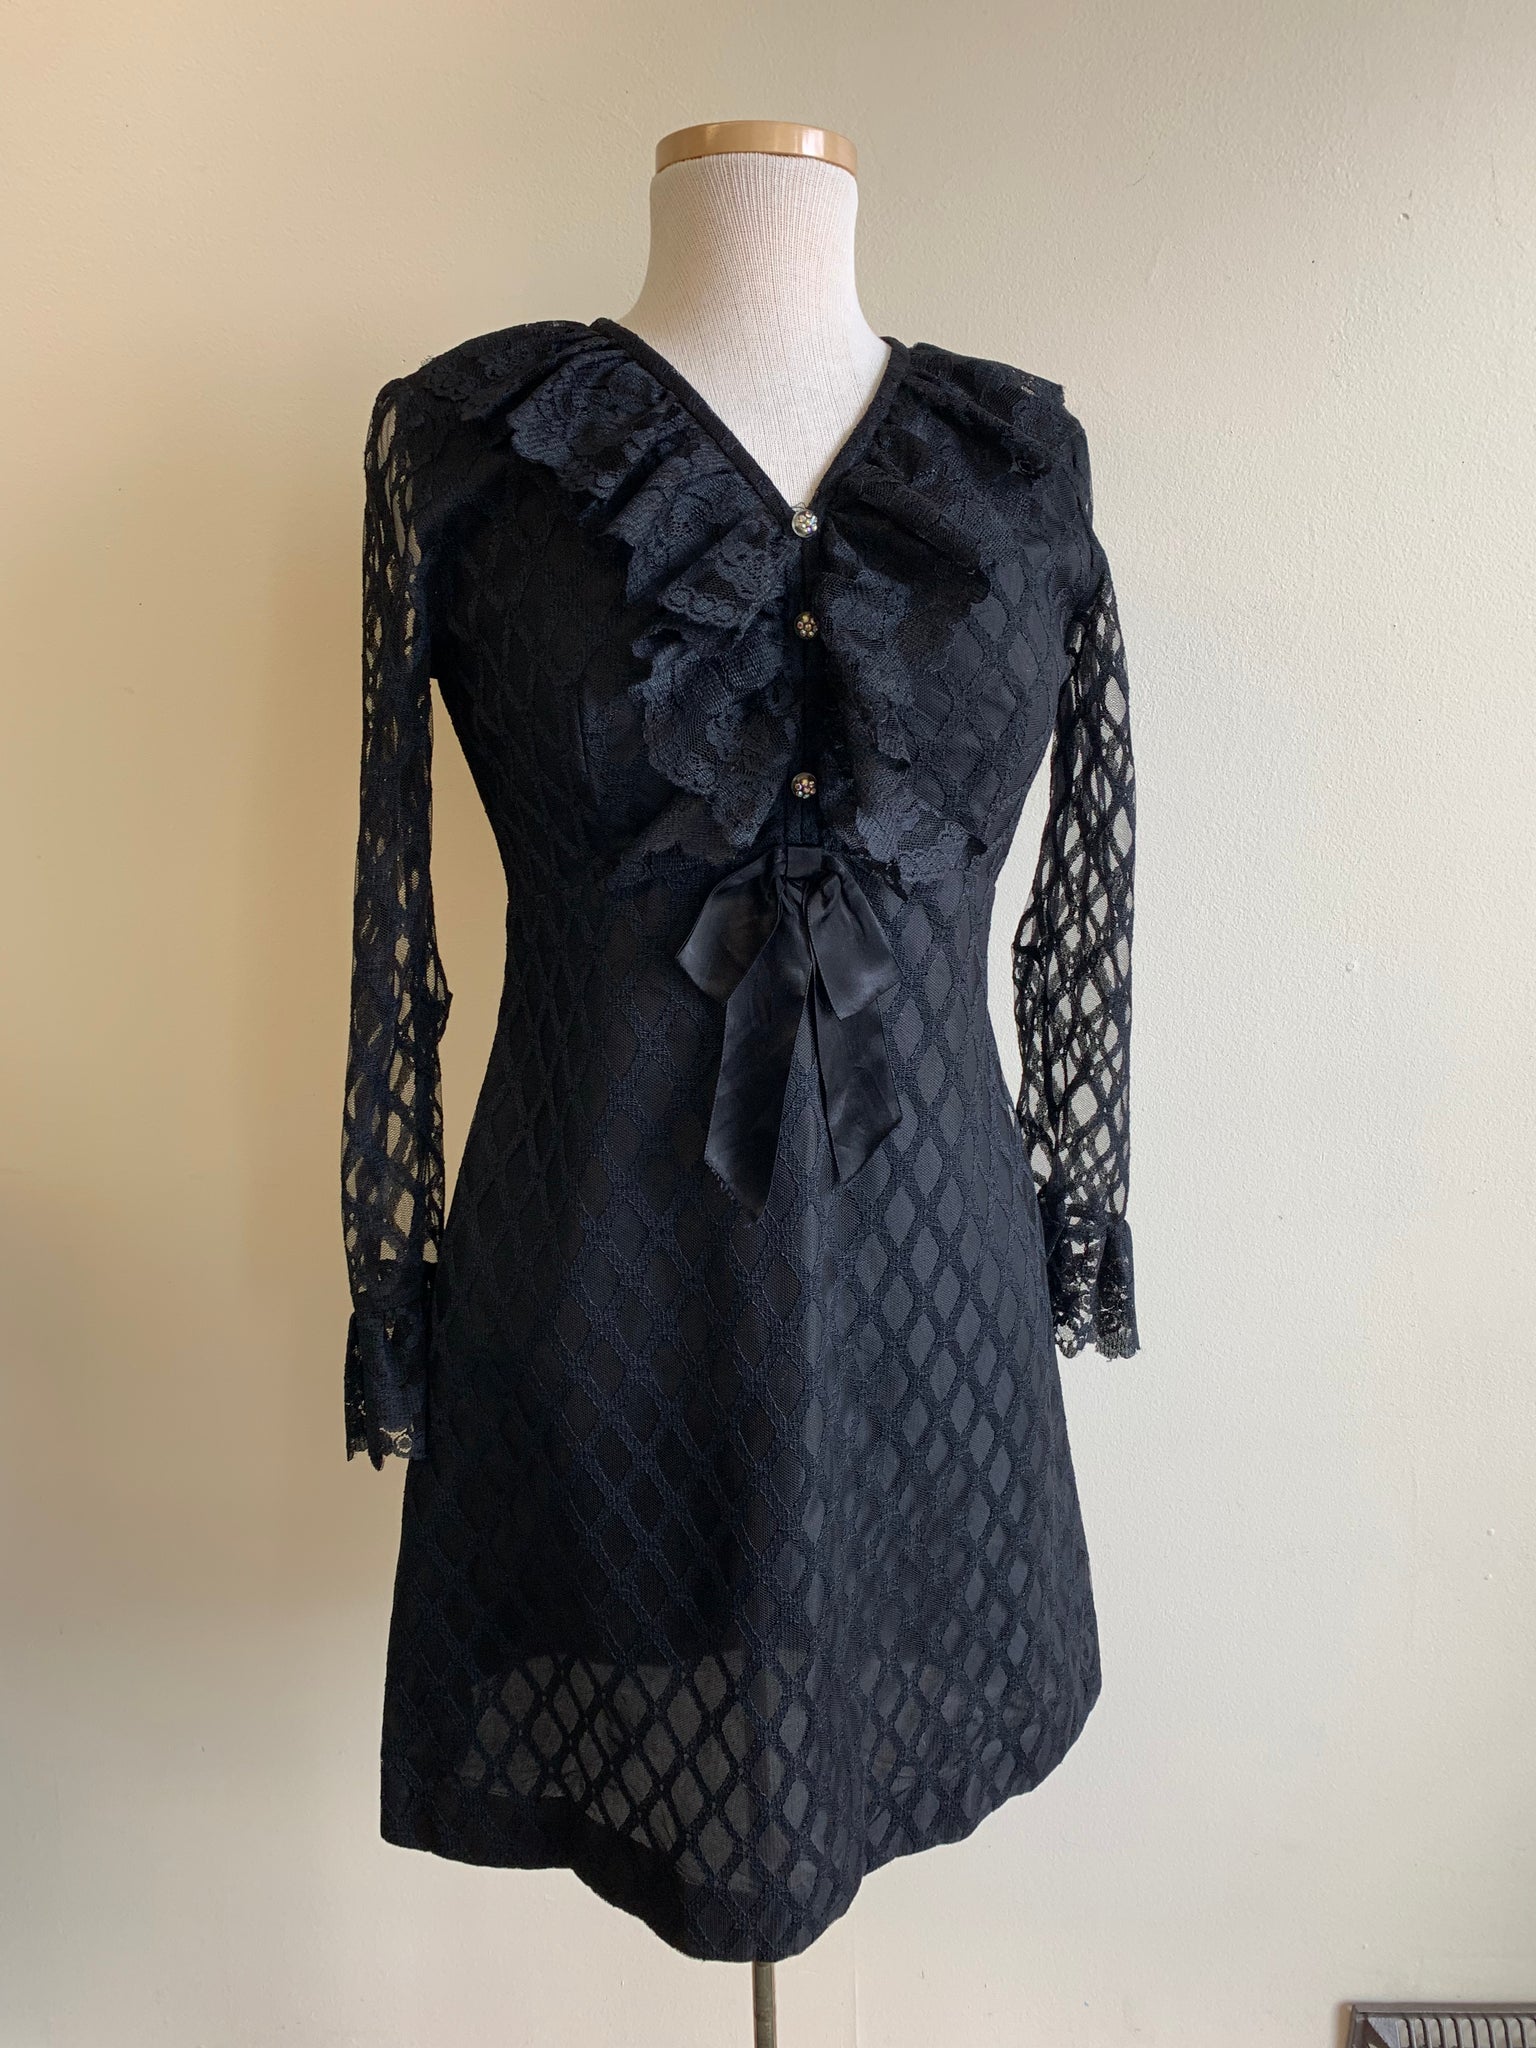 '60s Black Lace Party Dress - S